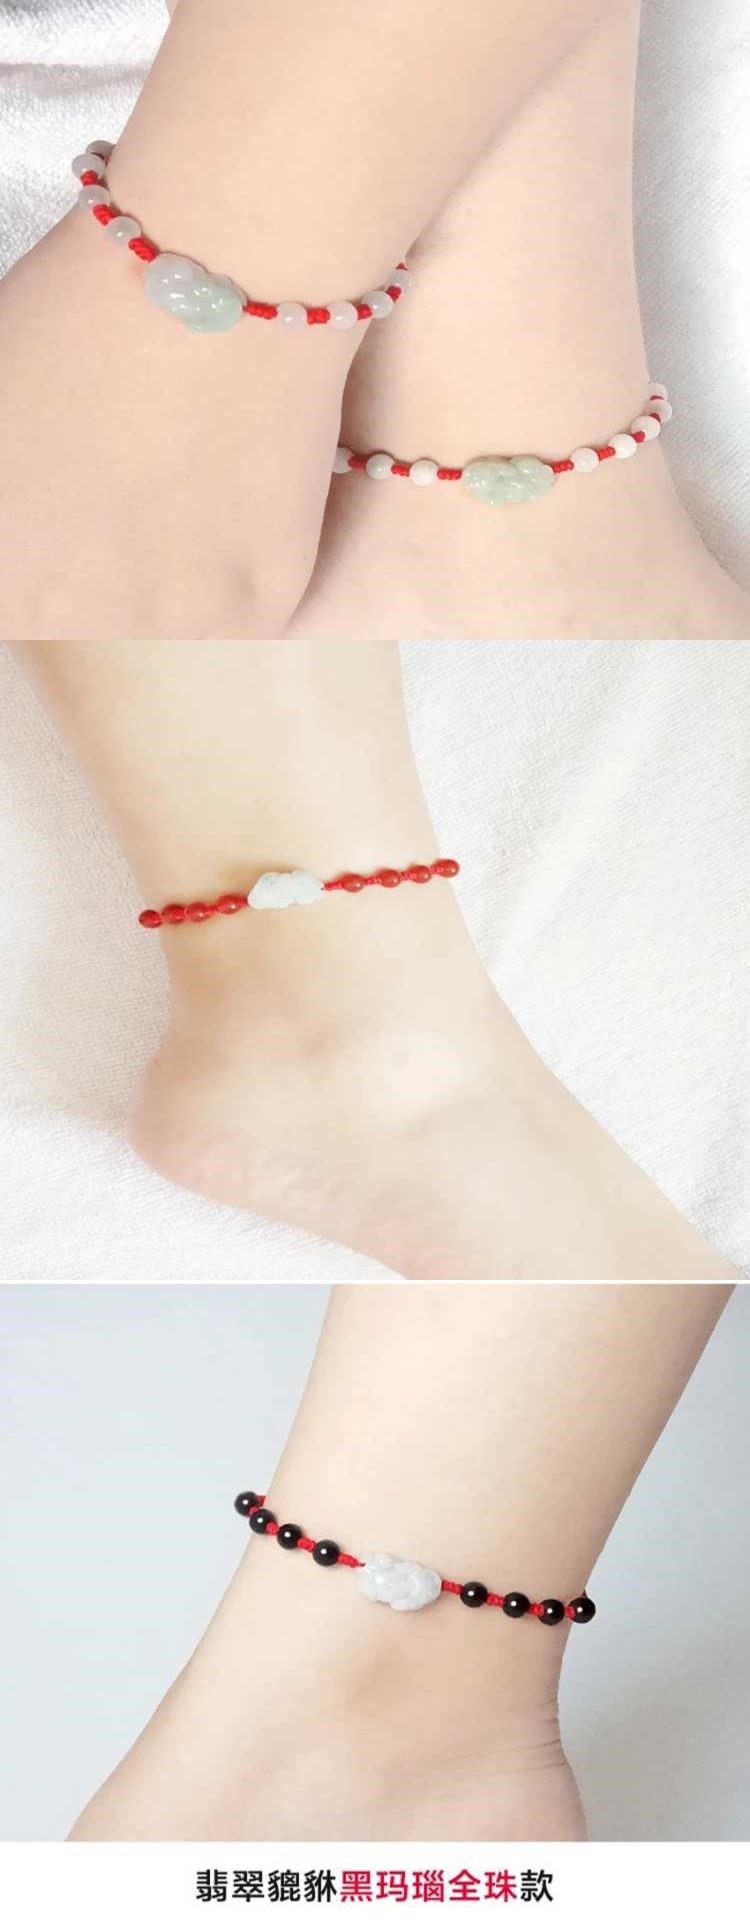 Red String Bracelet Anklet Pixiu SpongeBob Jewelry cho bạn gái Quà tặng sinh nhật cho bạn gái - Vòng chân